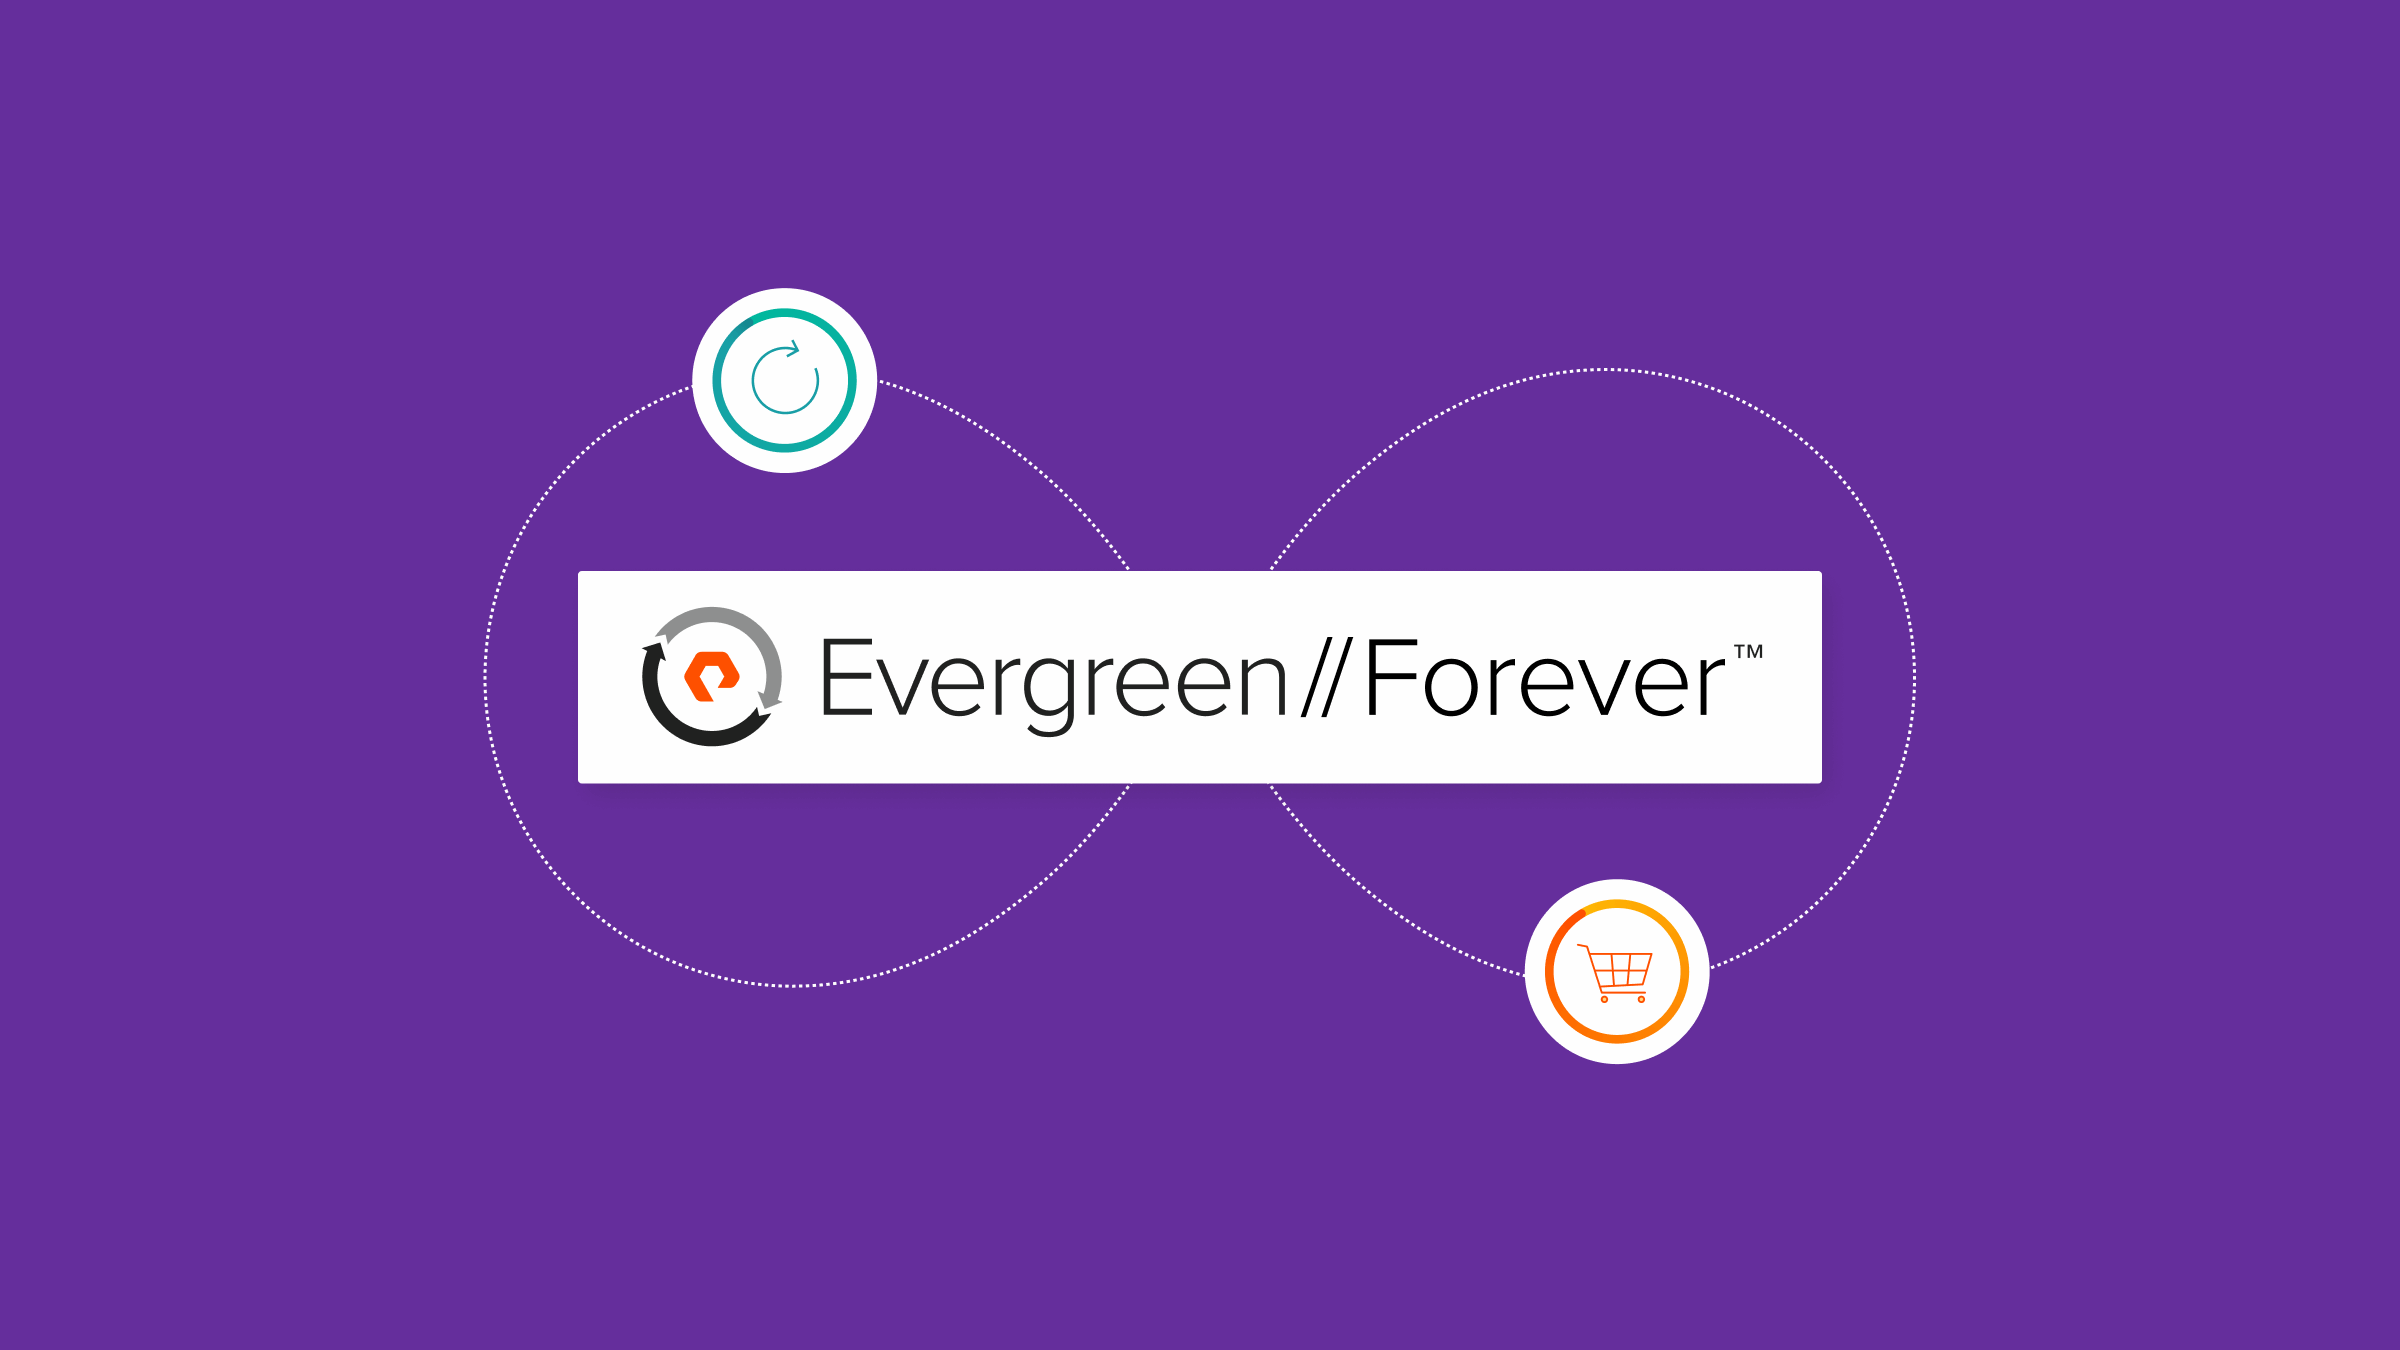 Evergreen//Forever: Uw abonnement op innovatie